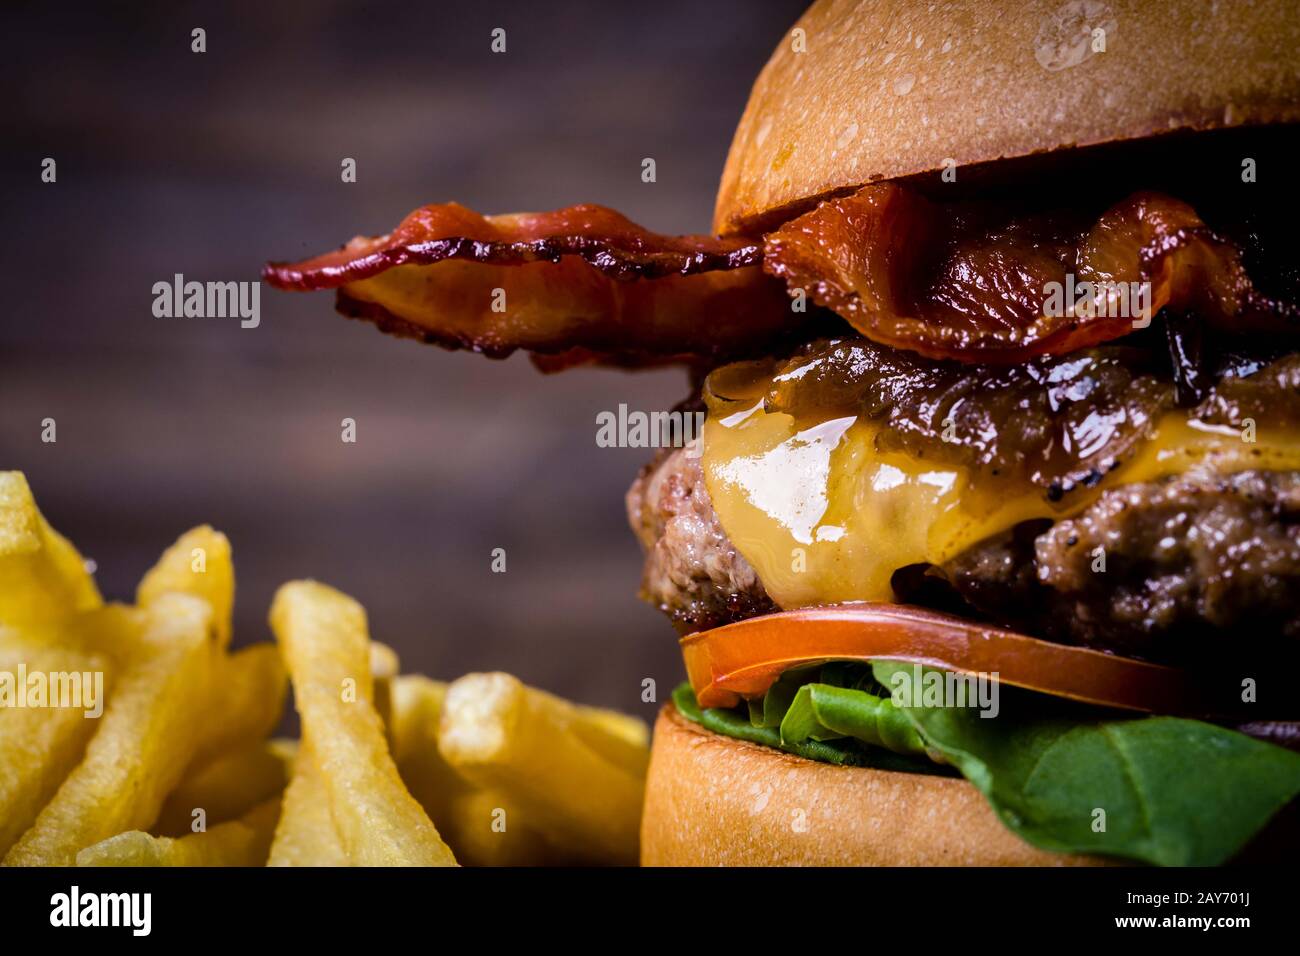 Hamburger de bœuf artisanal avec fromage, bacon, feuilles de roquette, caraméliser l'oignon et les frites sur table en bois et fond rustique Banque D'Images